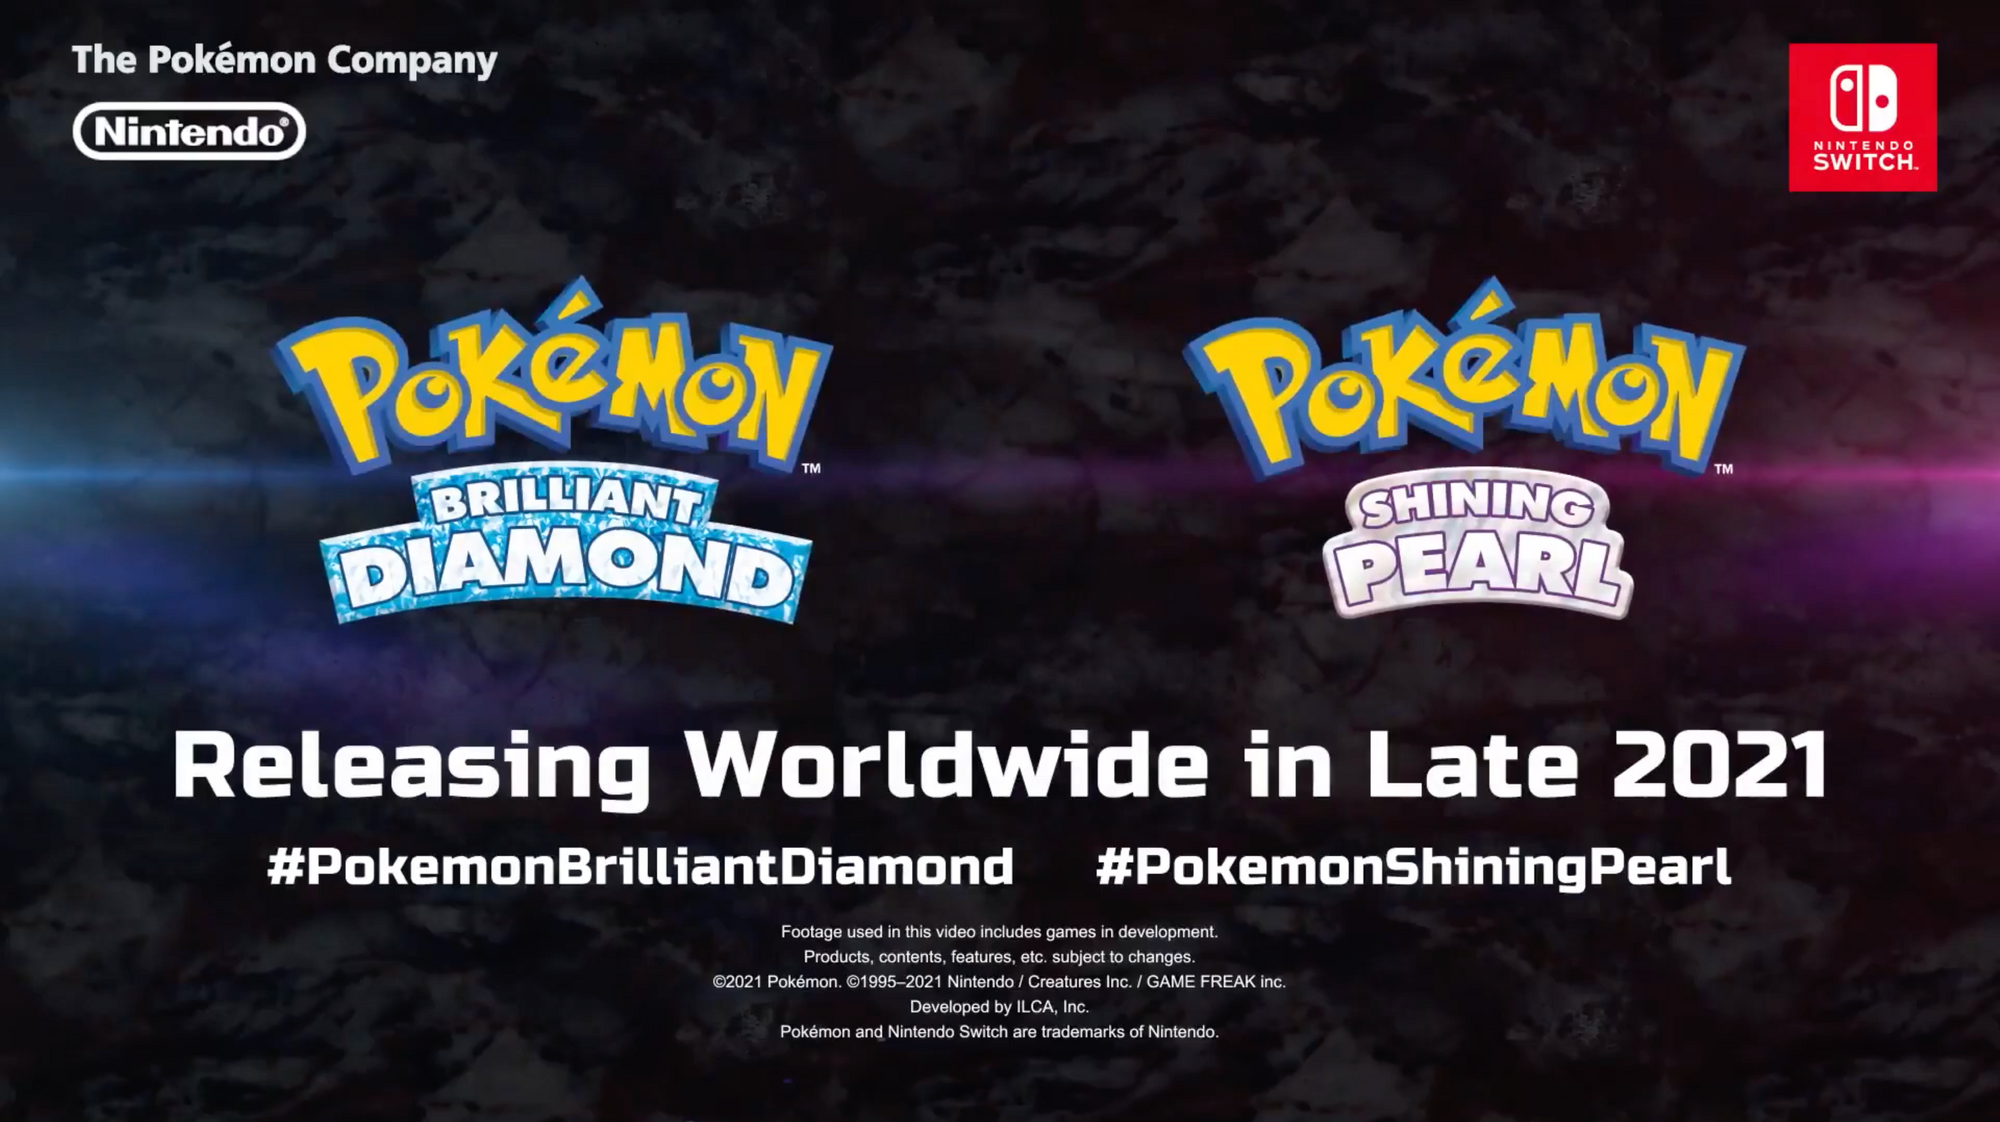 Pokemon Brilliant Diamond and Pokemon Shining Pearl Coming in Late 2021